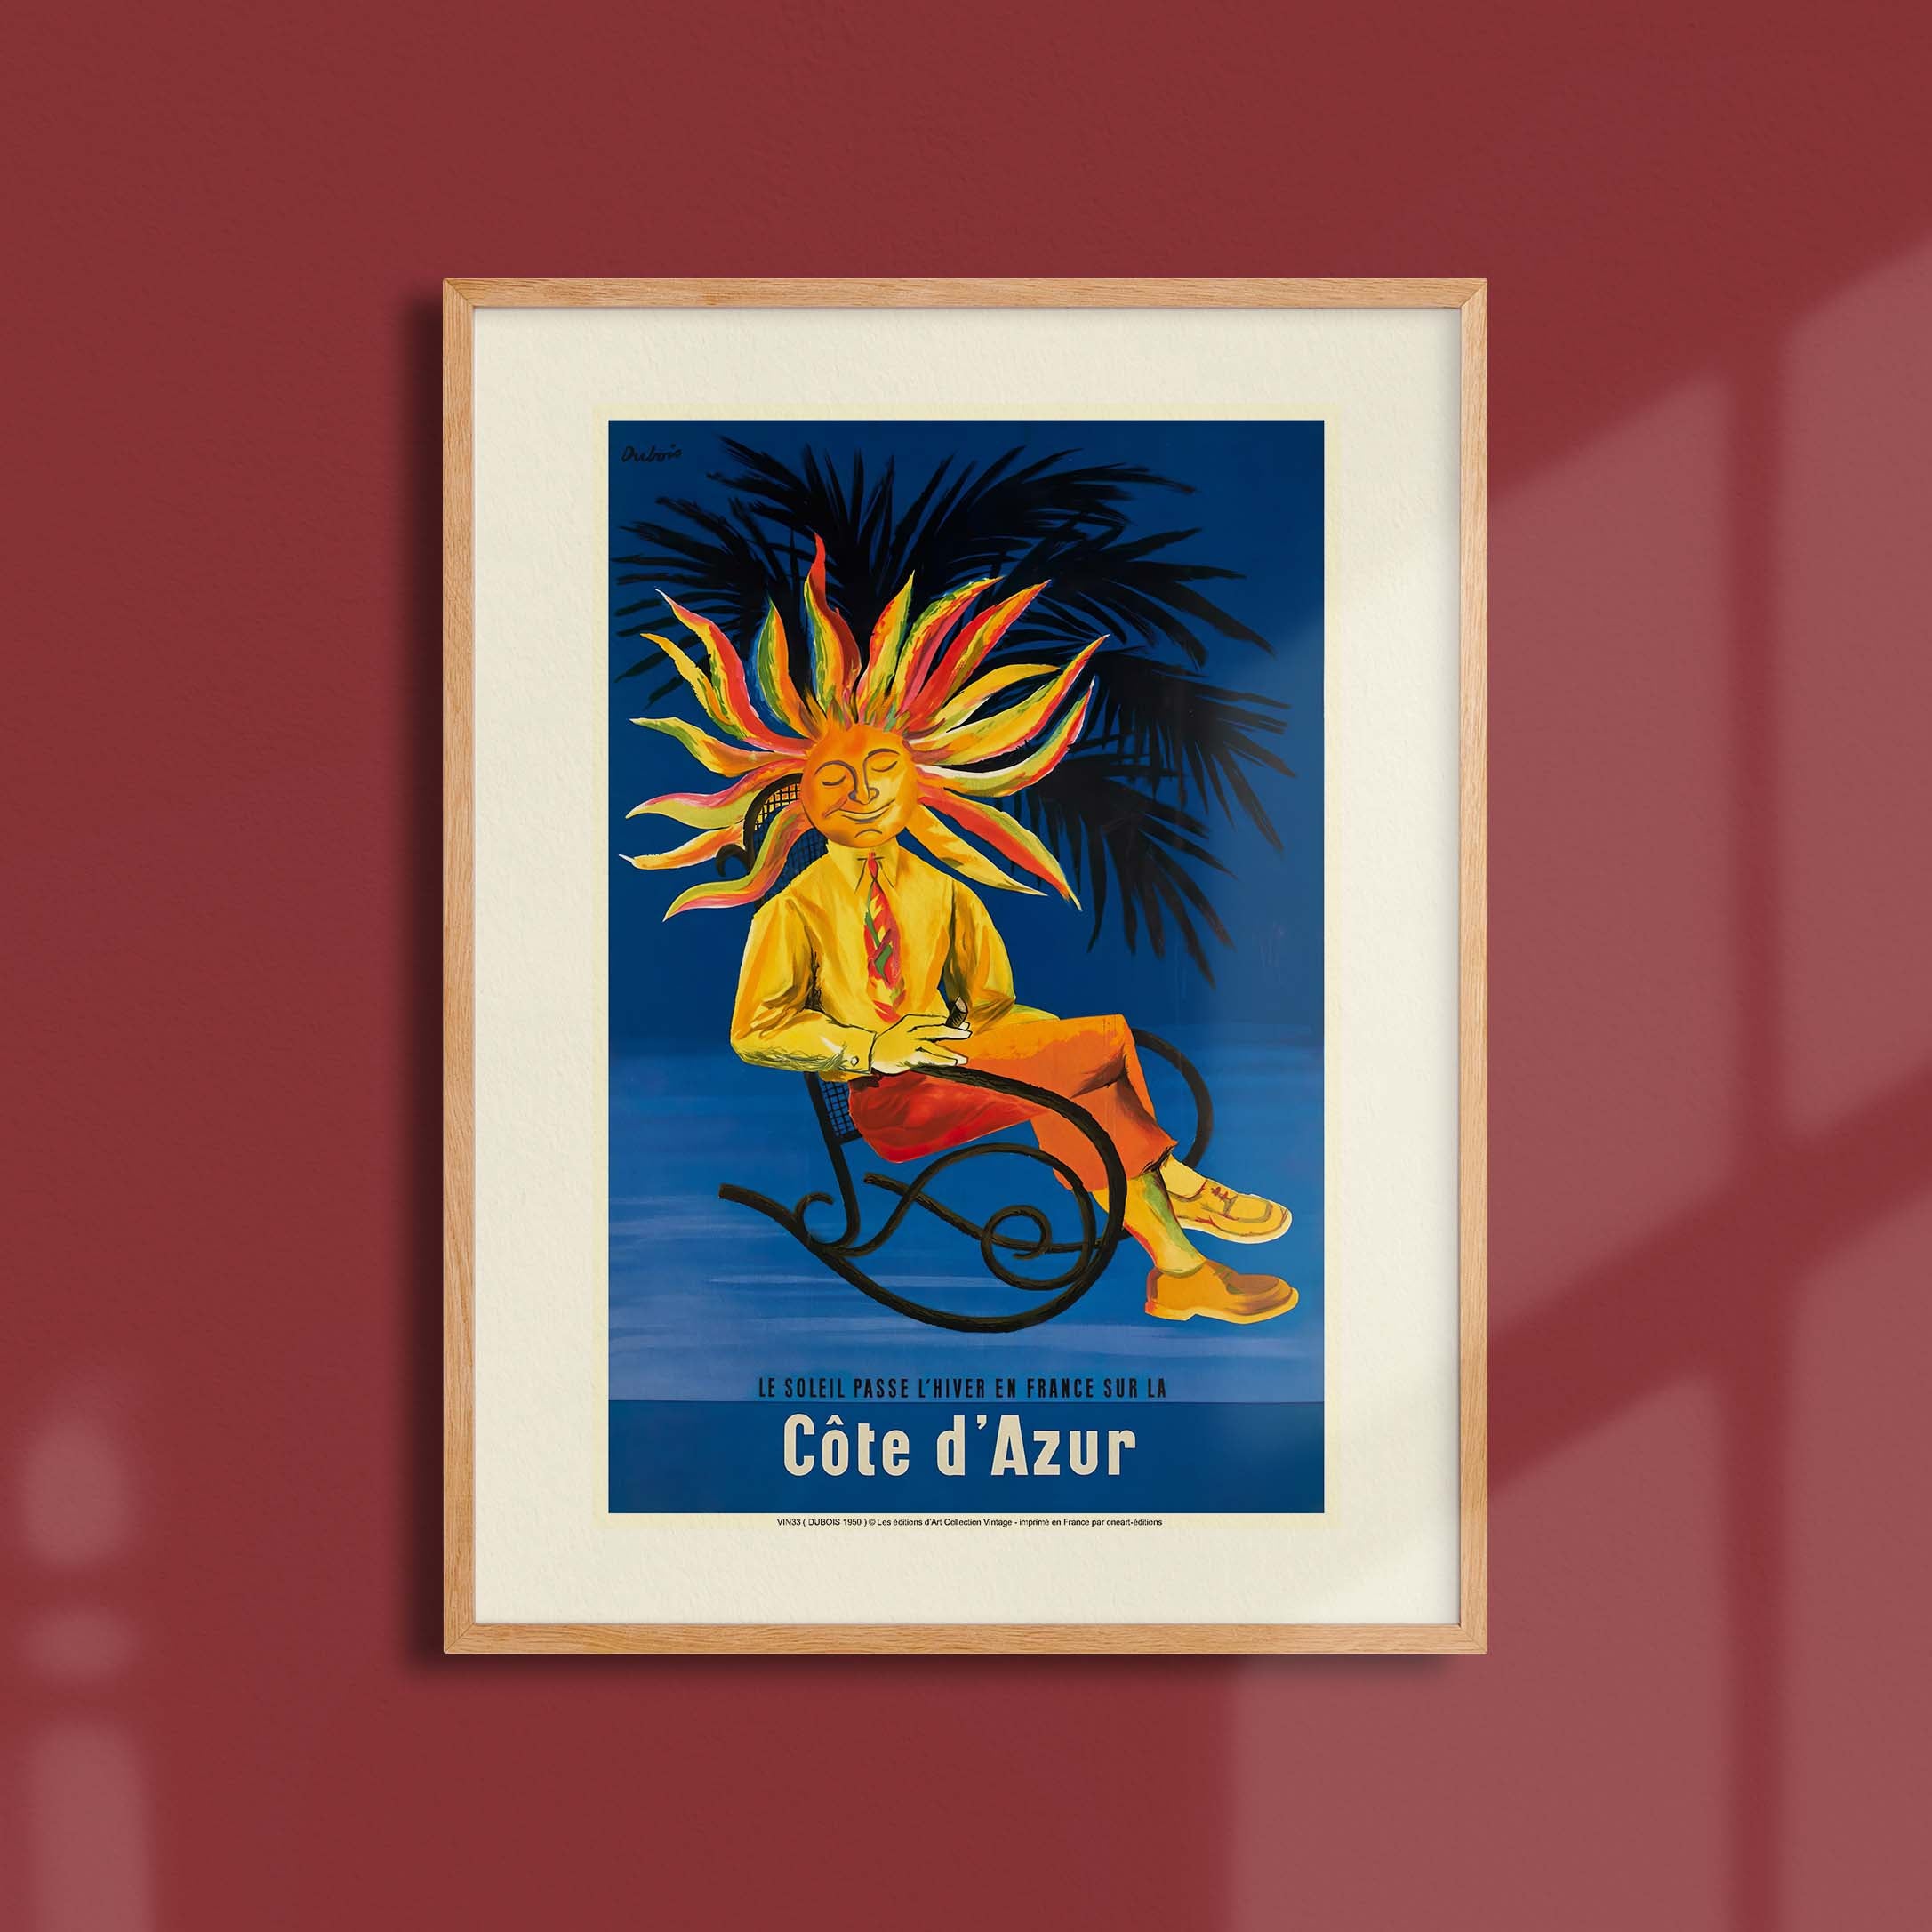 Affiche publicité vintage - Soleil-oneart.fr